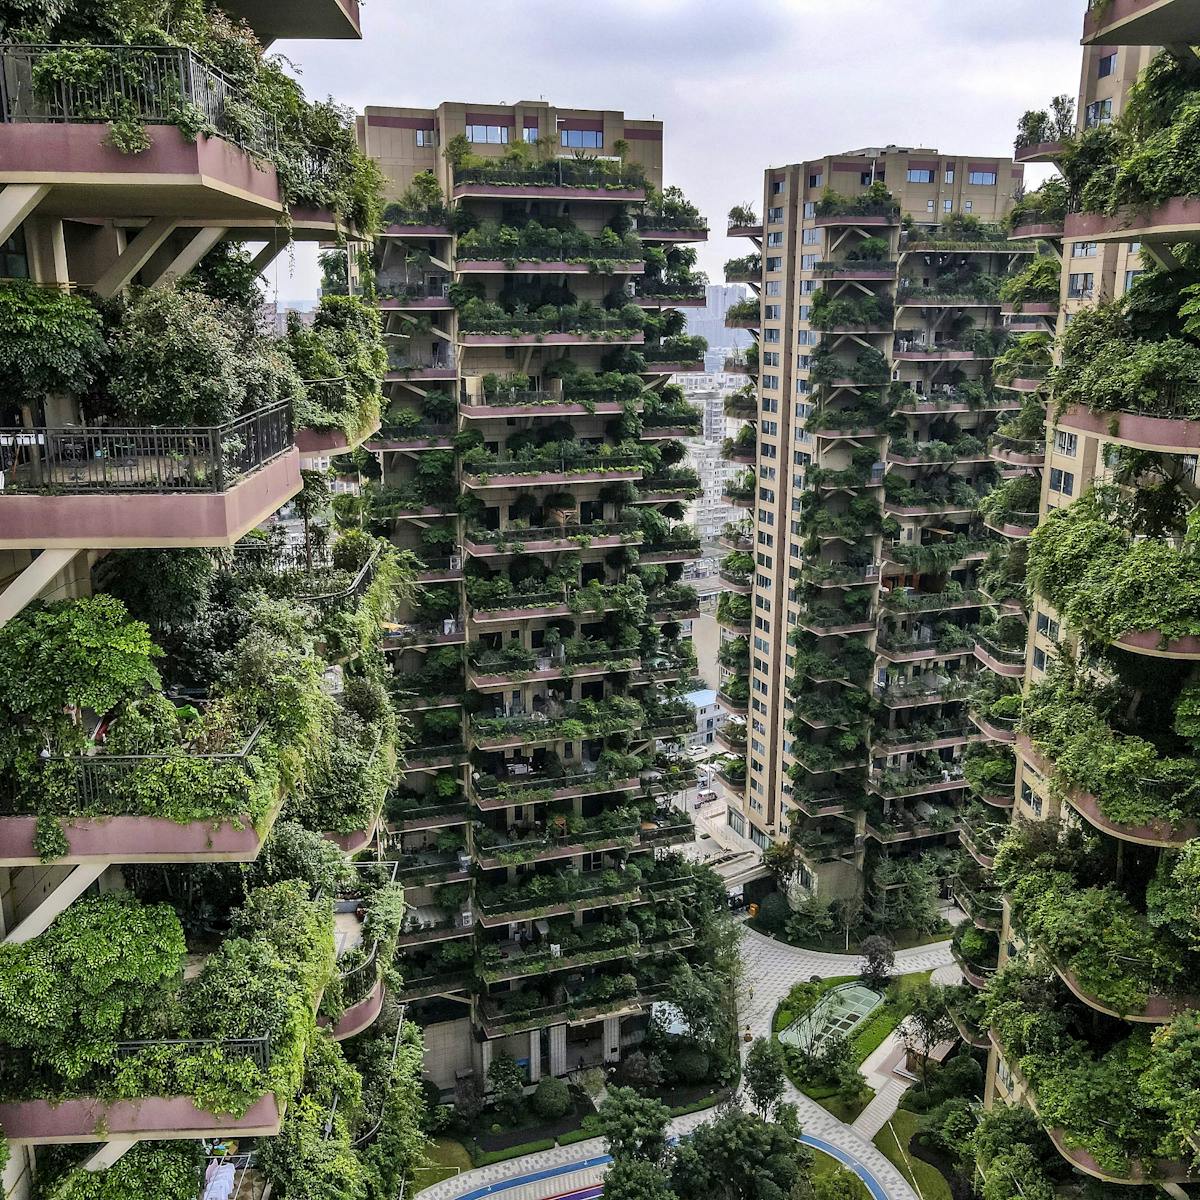 Green architecture